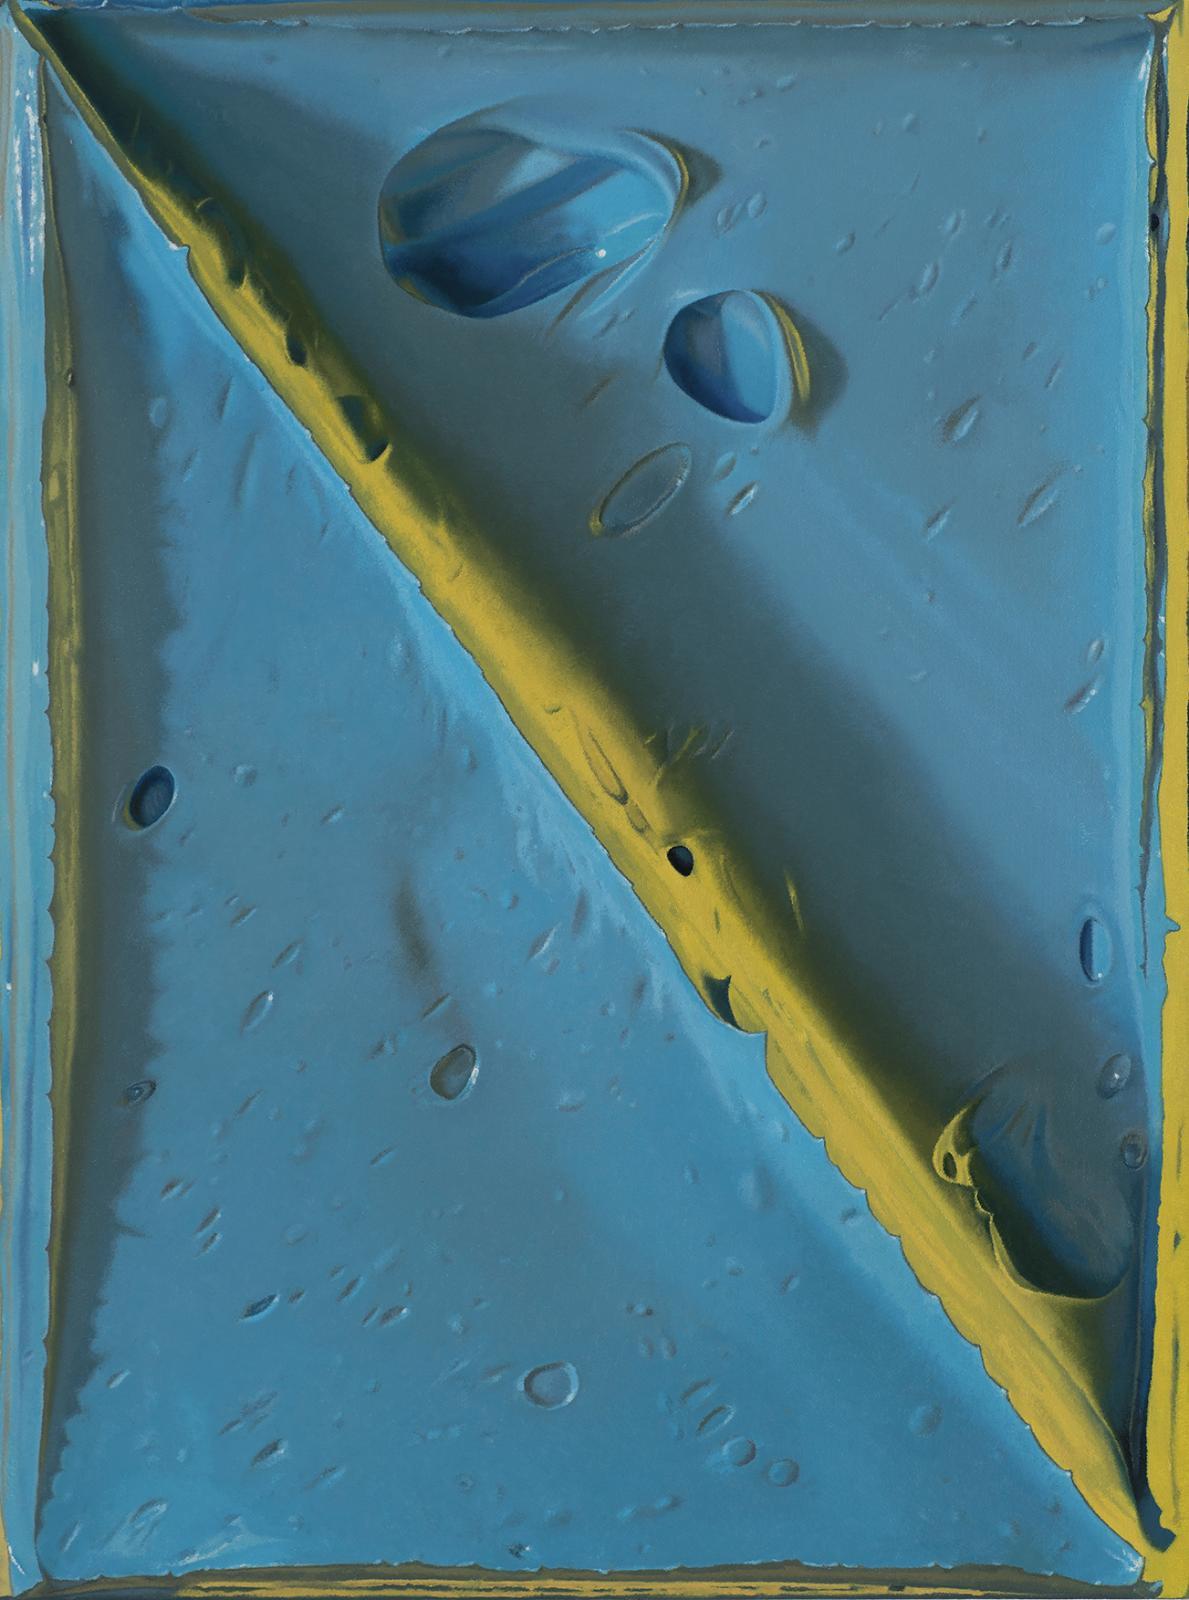 Felix Rehfeld, Ohne Titel, blau gelb vr, 2020, Öl auf Leinwand,64 x 48cm, ref005de